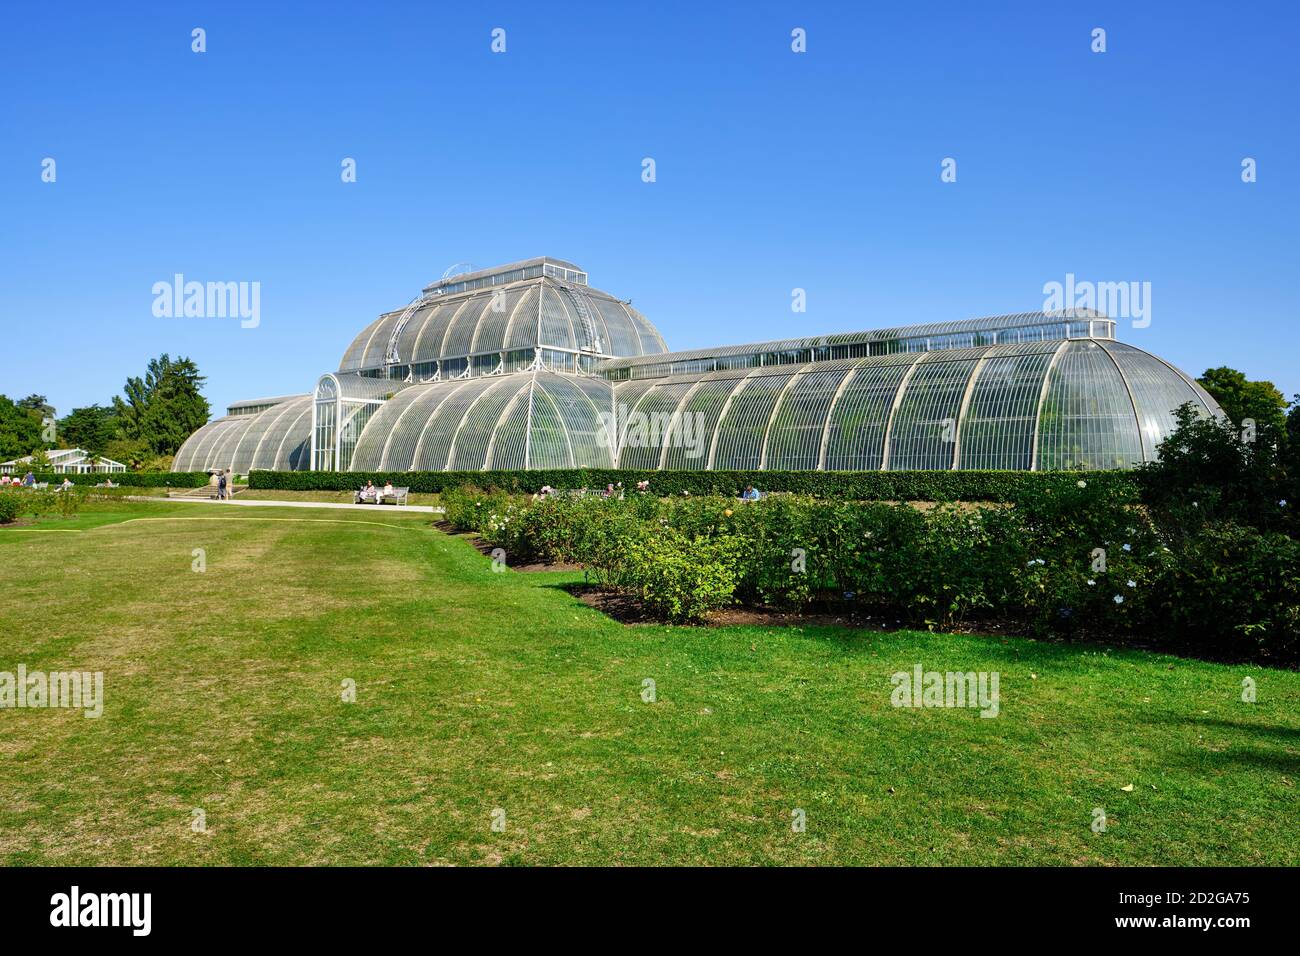 Vue en perspective de la Palm House dans les jardins botaniques royaux, Kew à Richmond sur la Tamise, dans un ciel bleu clair. Banque D'Images